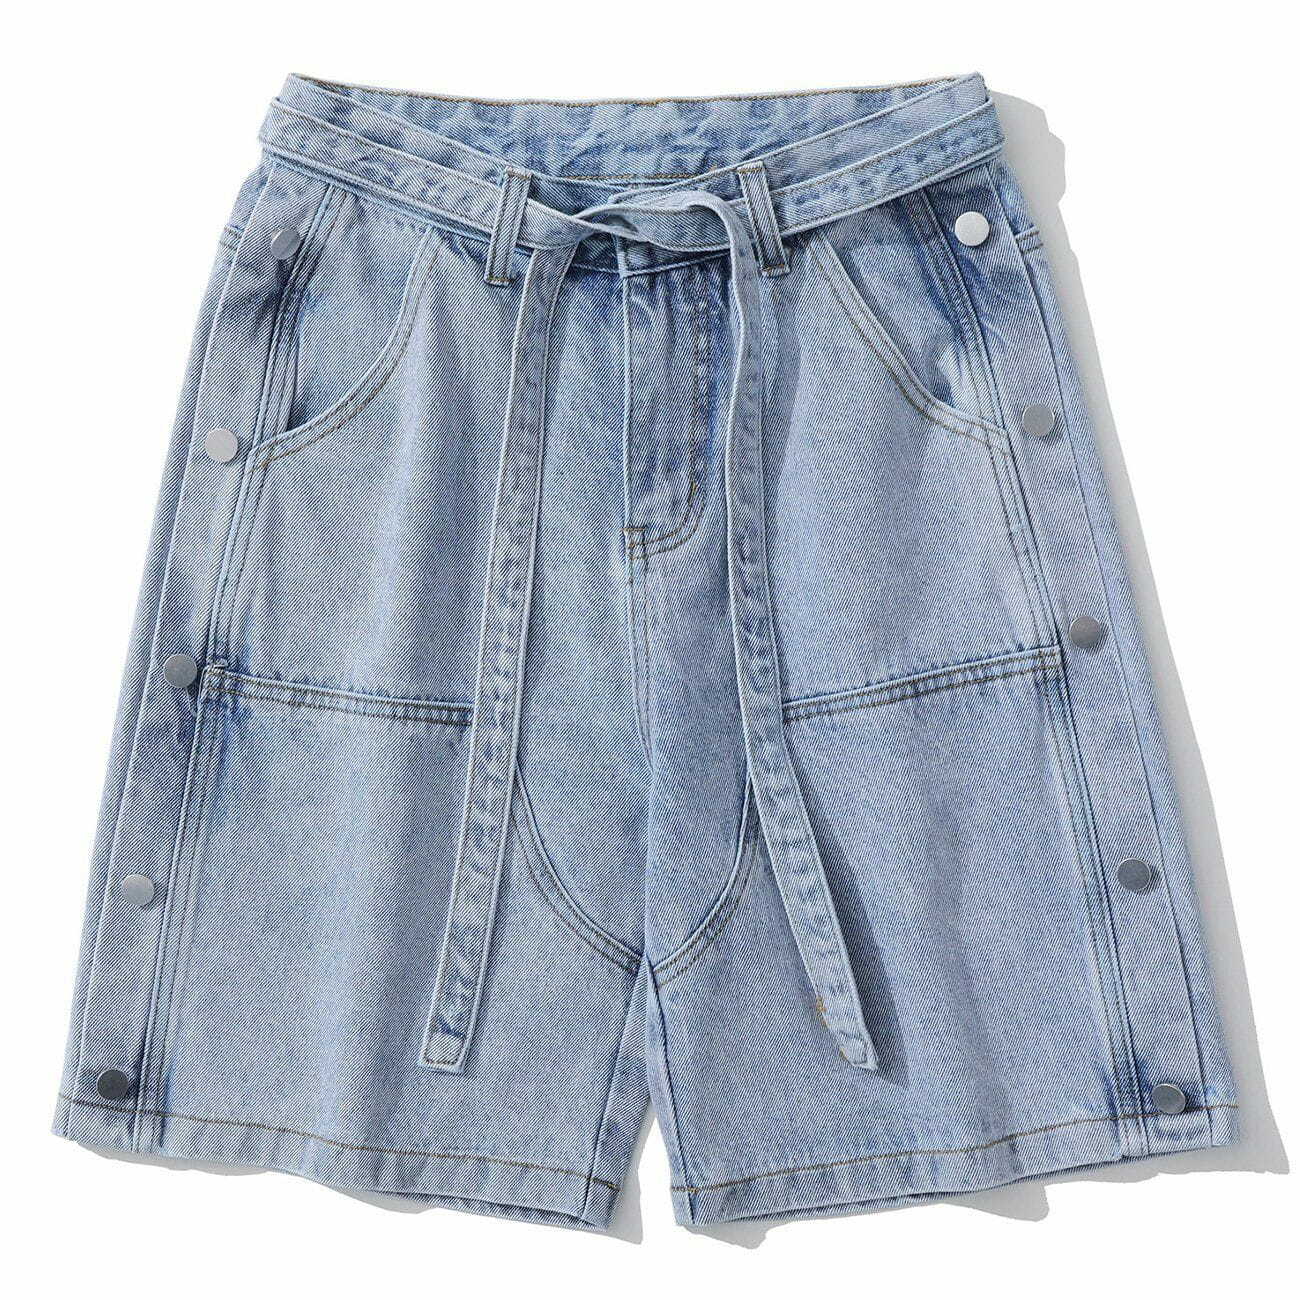 denim side button shorts edgy streetwear essential 7302